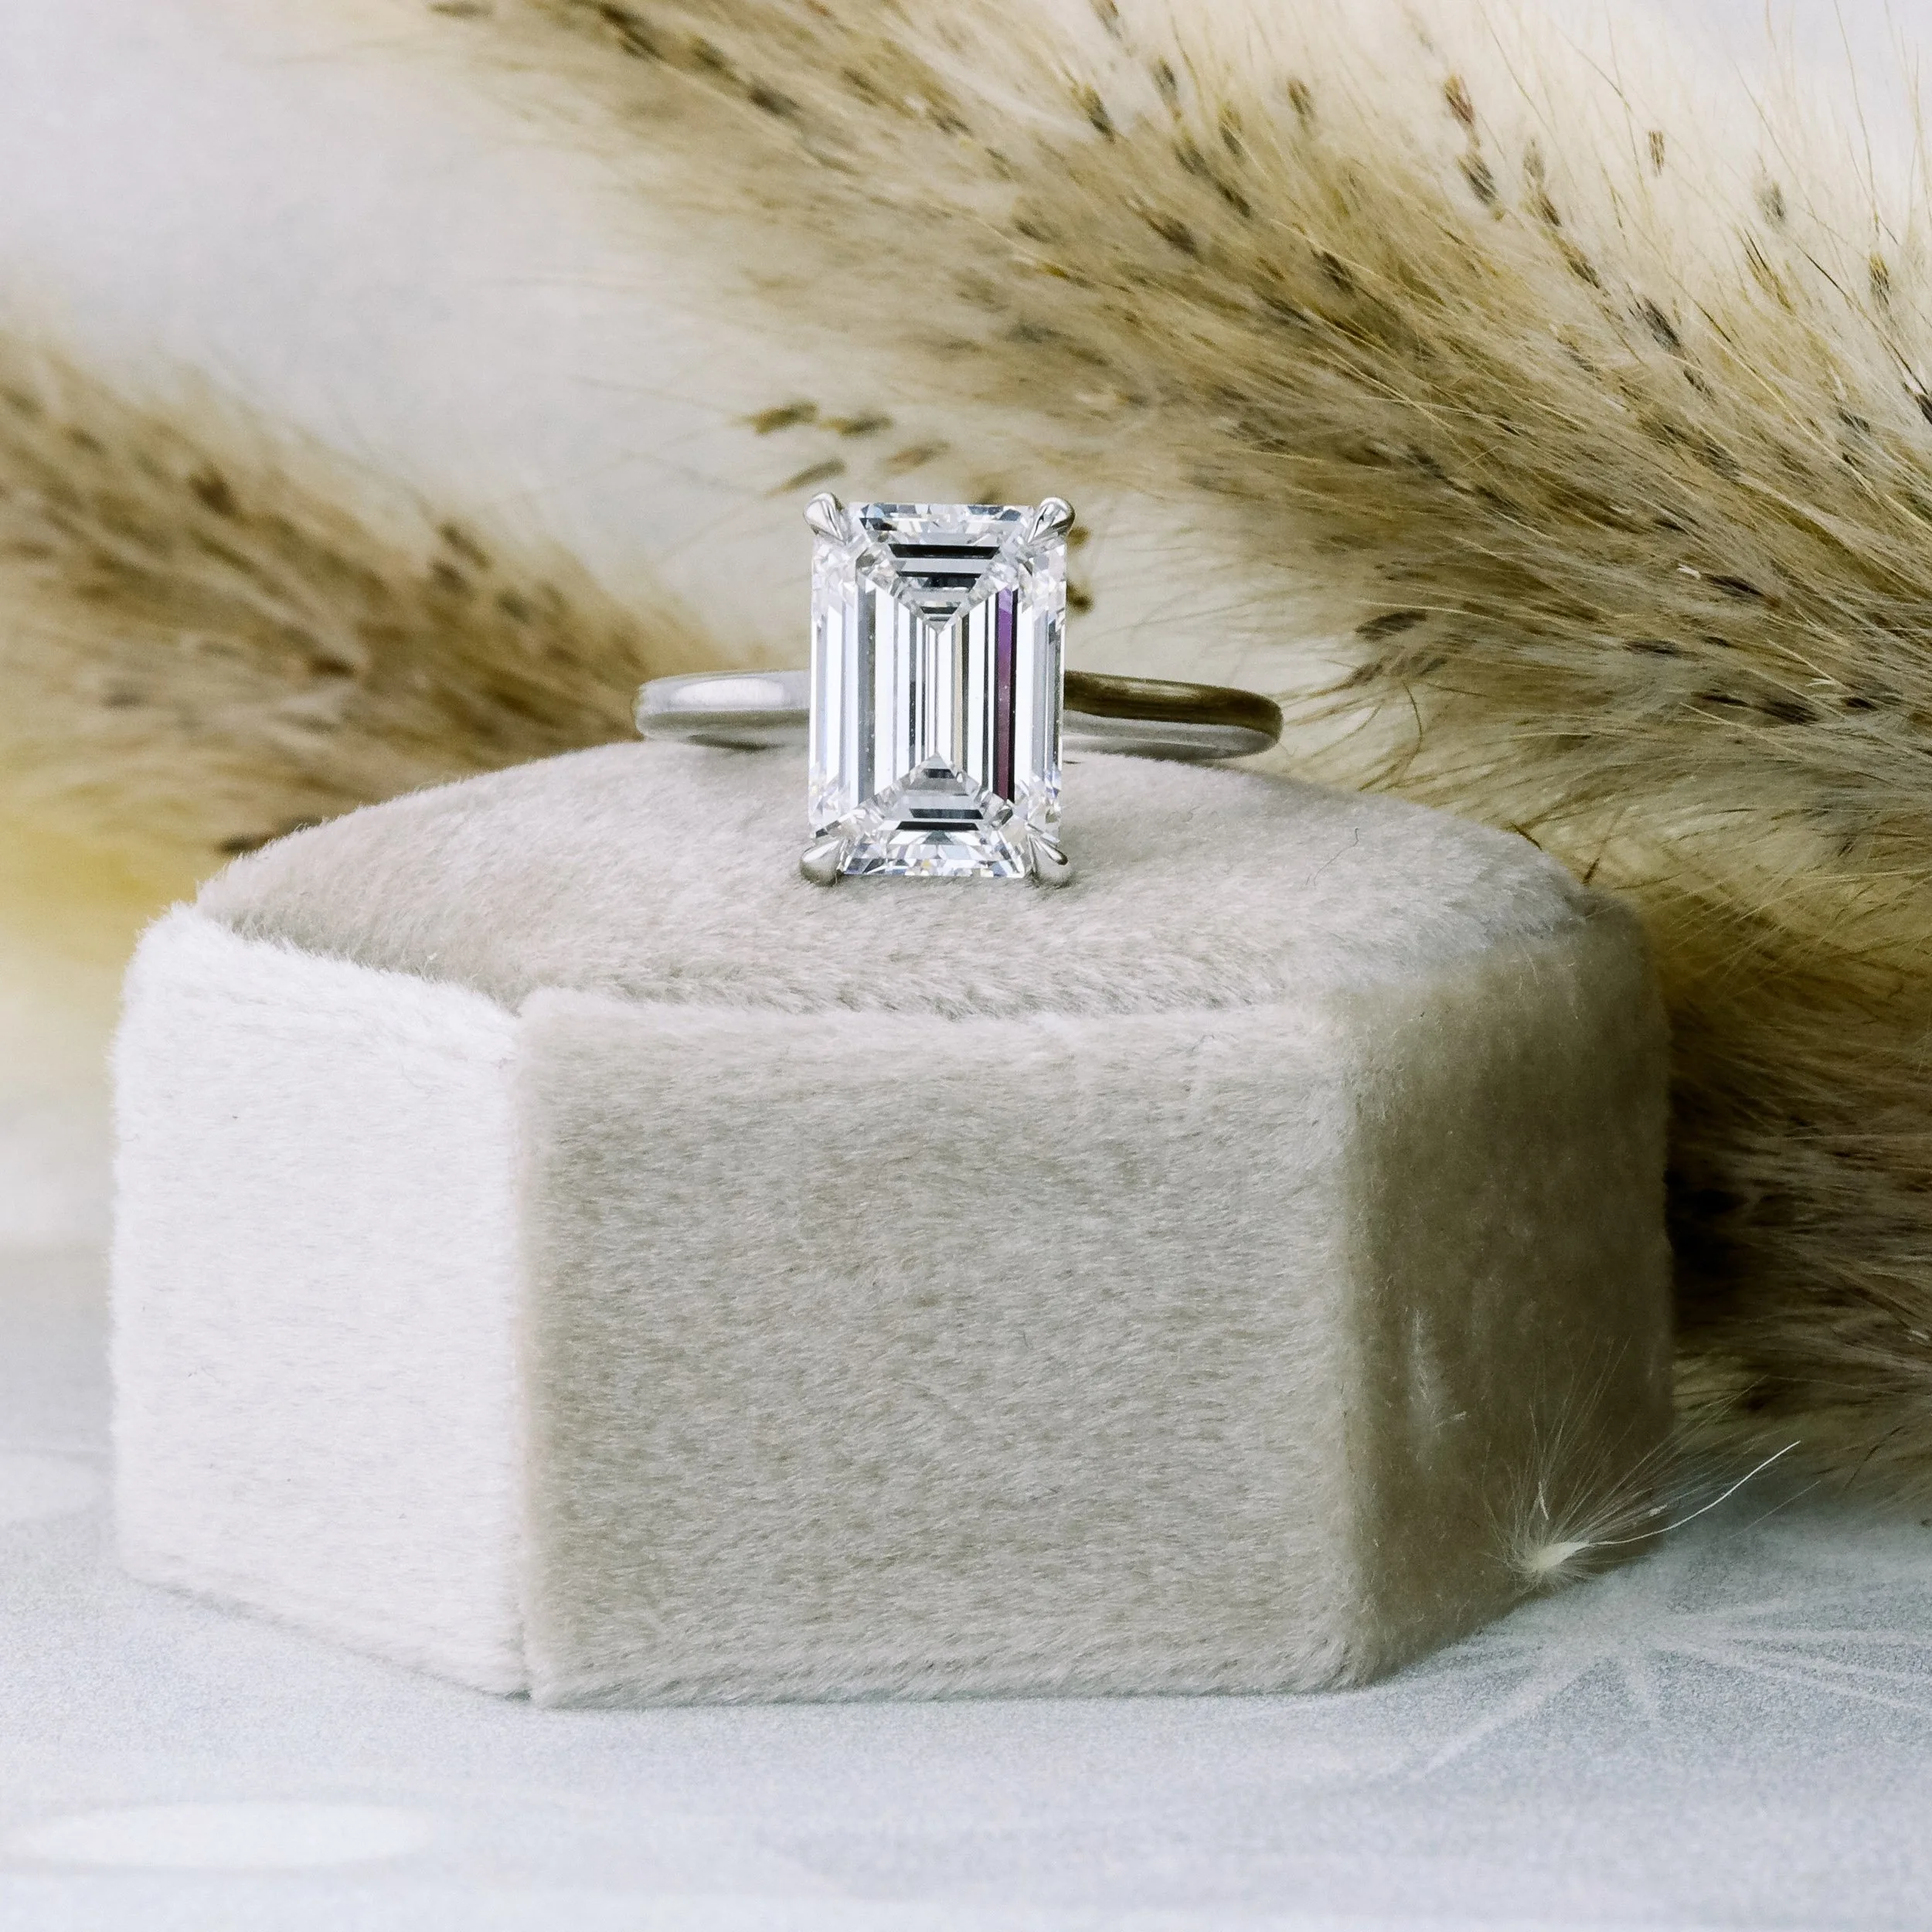 platinum 5 carat emerald cut trellis lab diamond solitaire engagement ring ada diamonds design ad 330 profile view